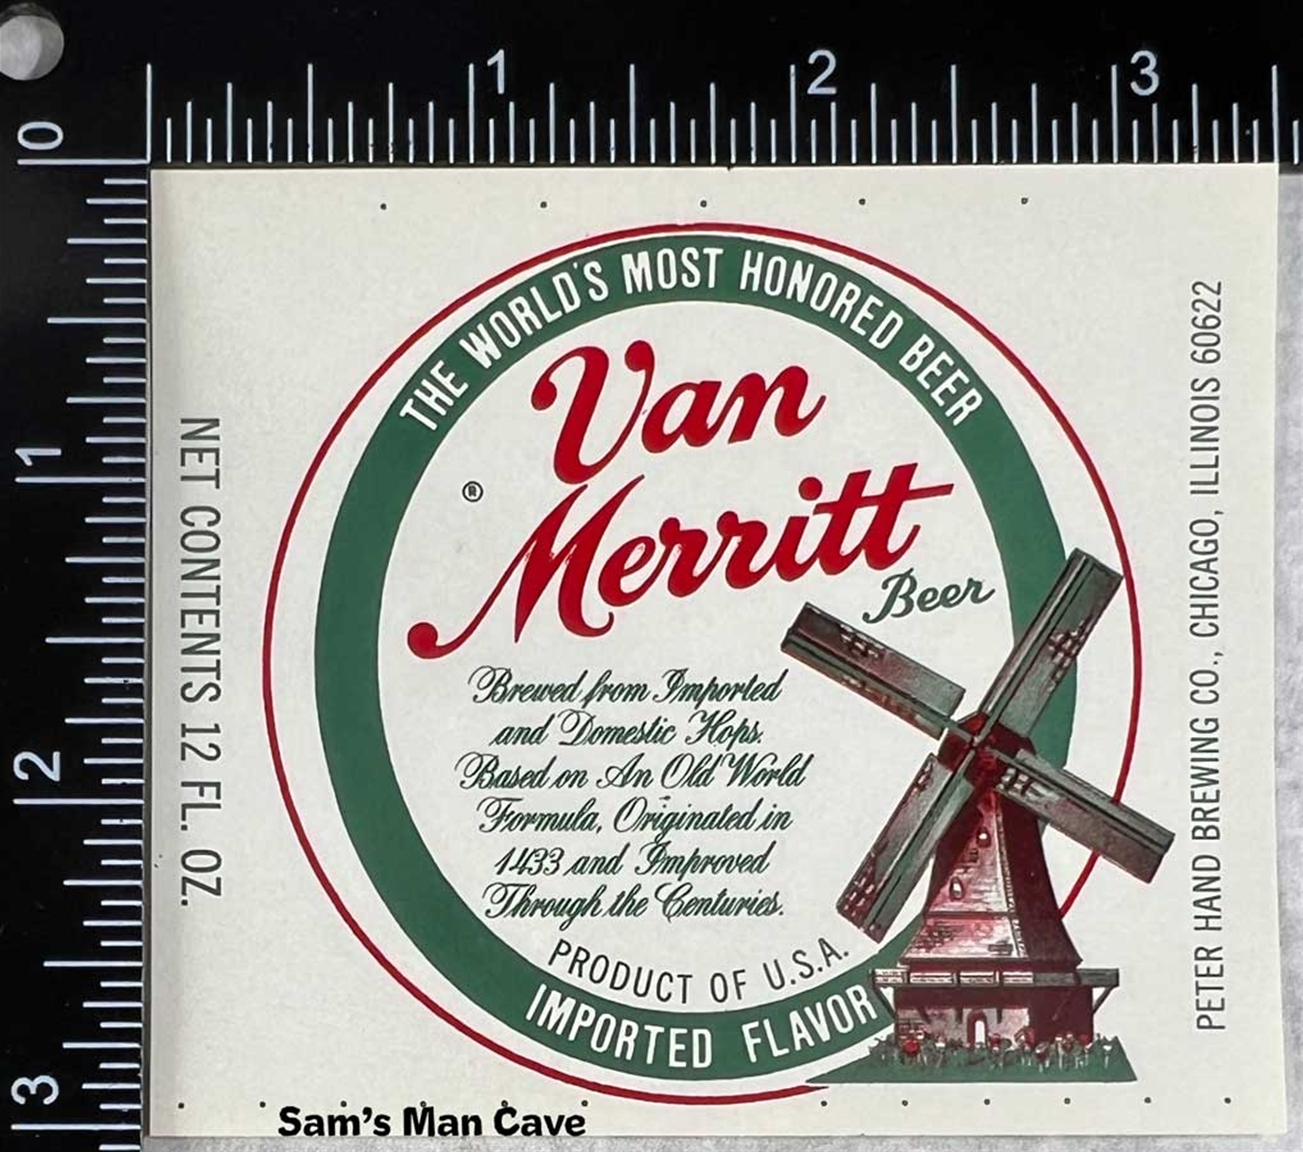 Van Merritt Beer Label